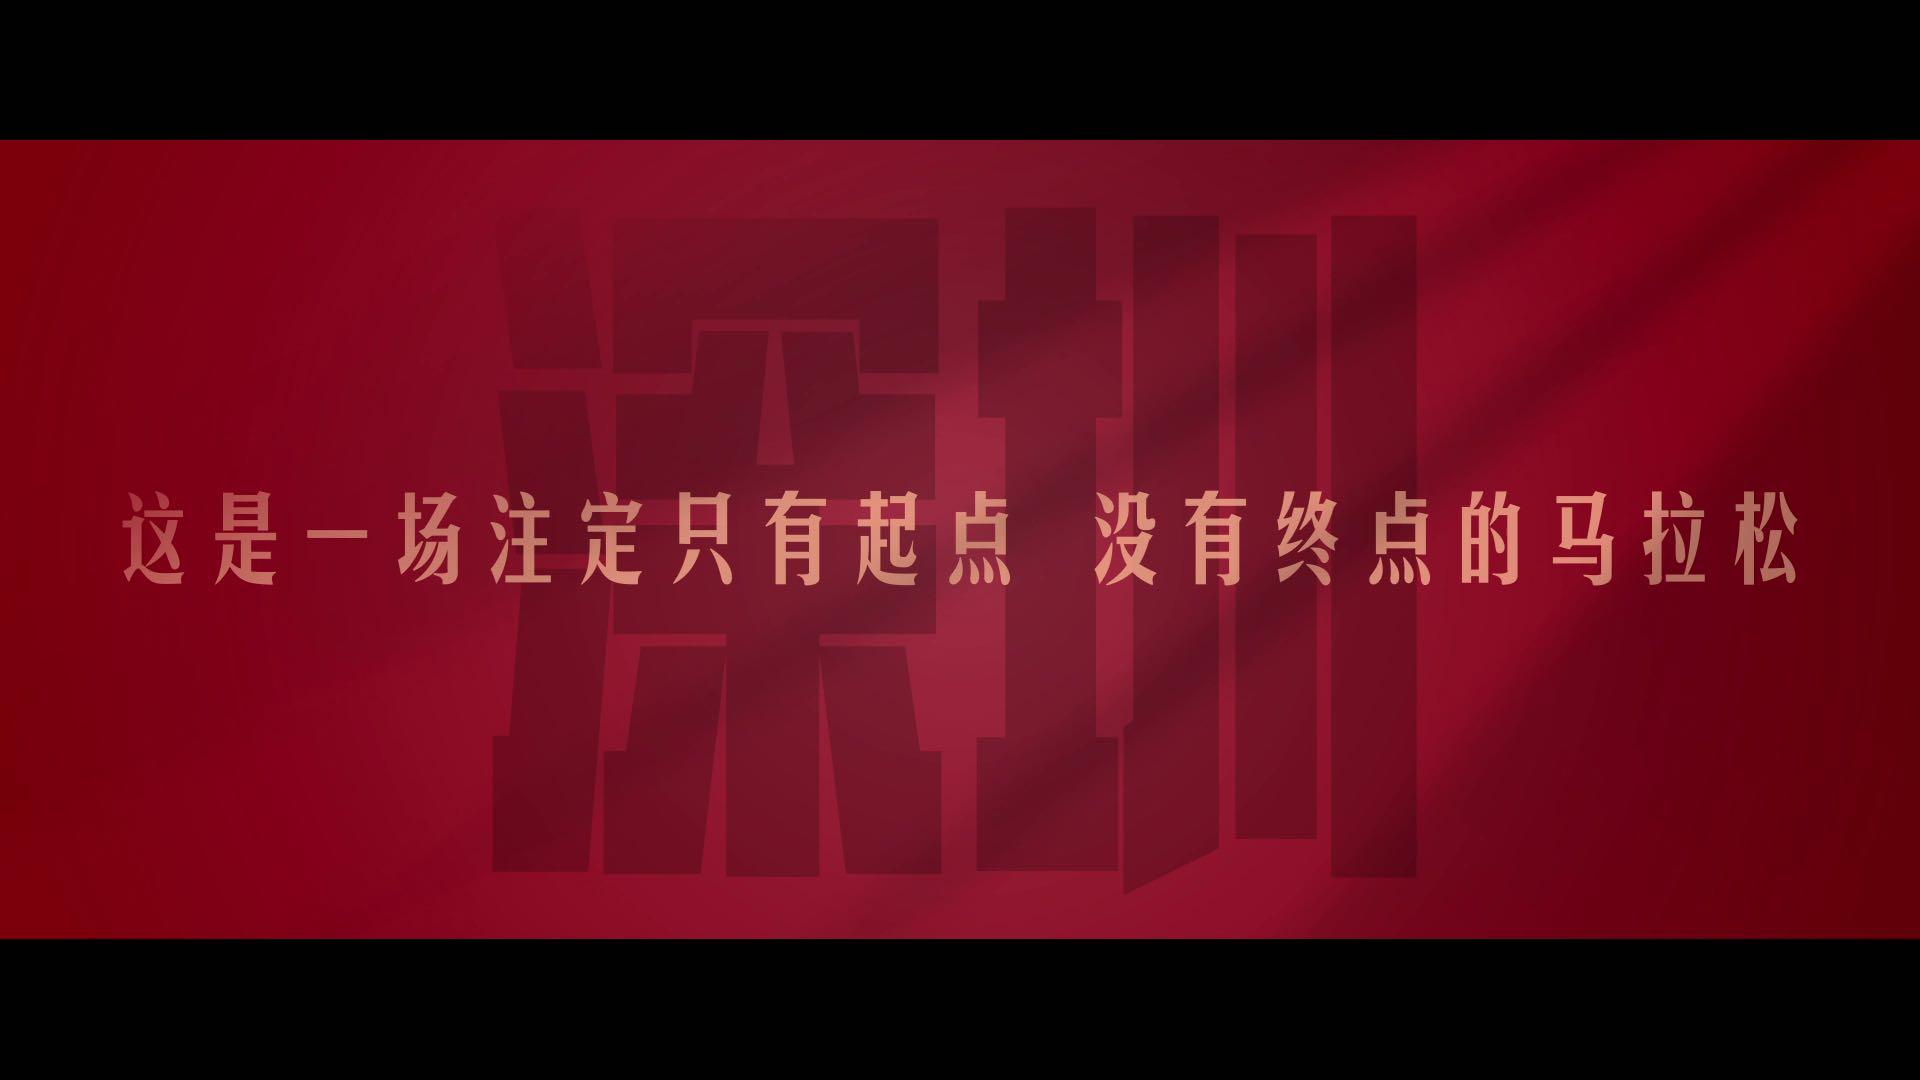 中国银行深圳分行形象宣传片《先行自有价值》导演版